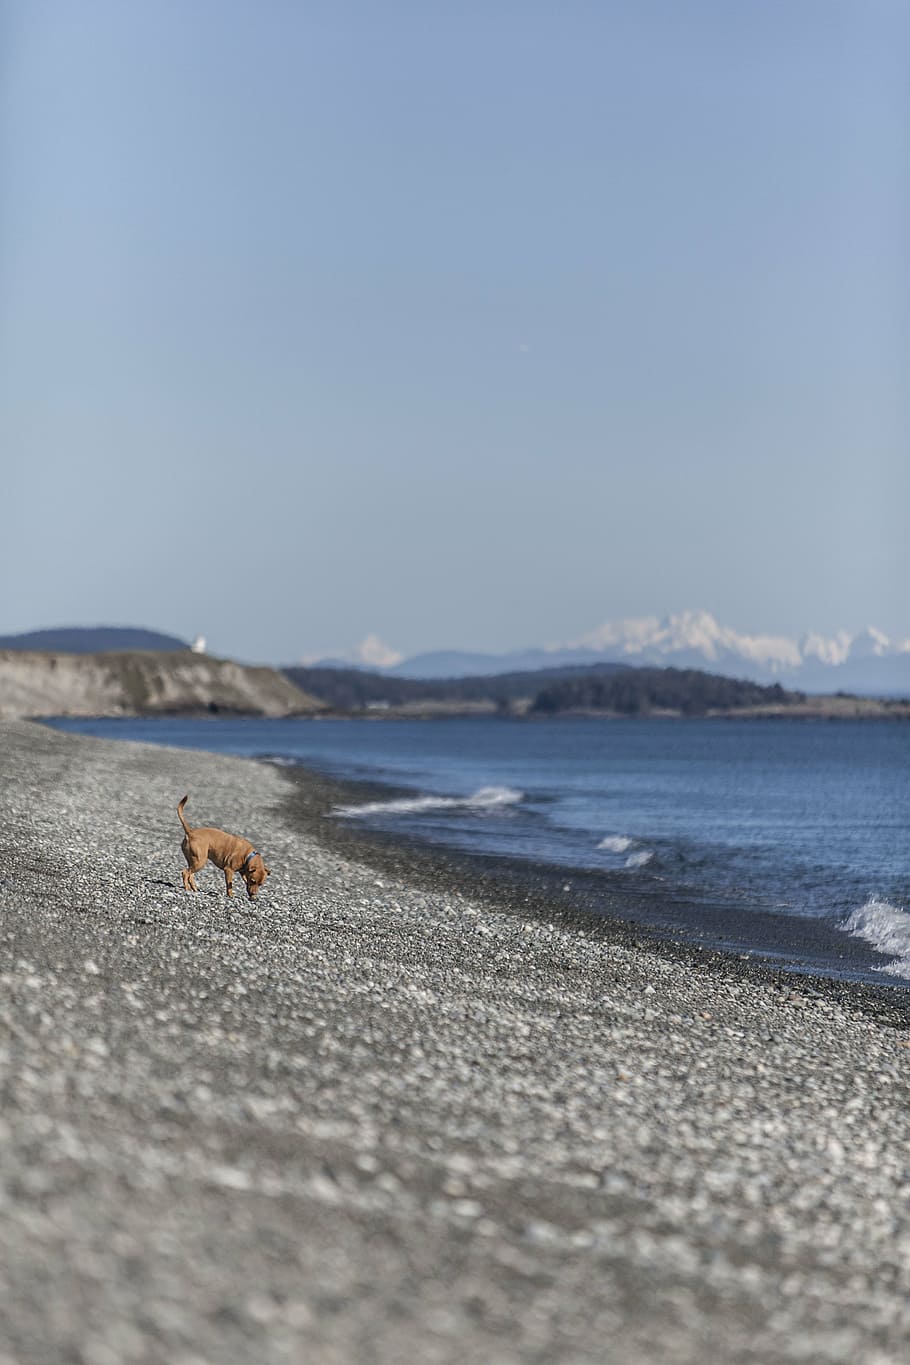 seletivo, fotografia de foco, marrom, cachorro, praia, natureza, água, oceano, mar, ondas